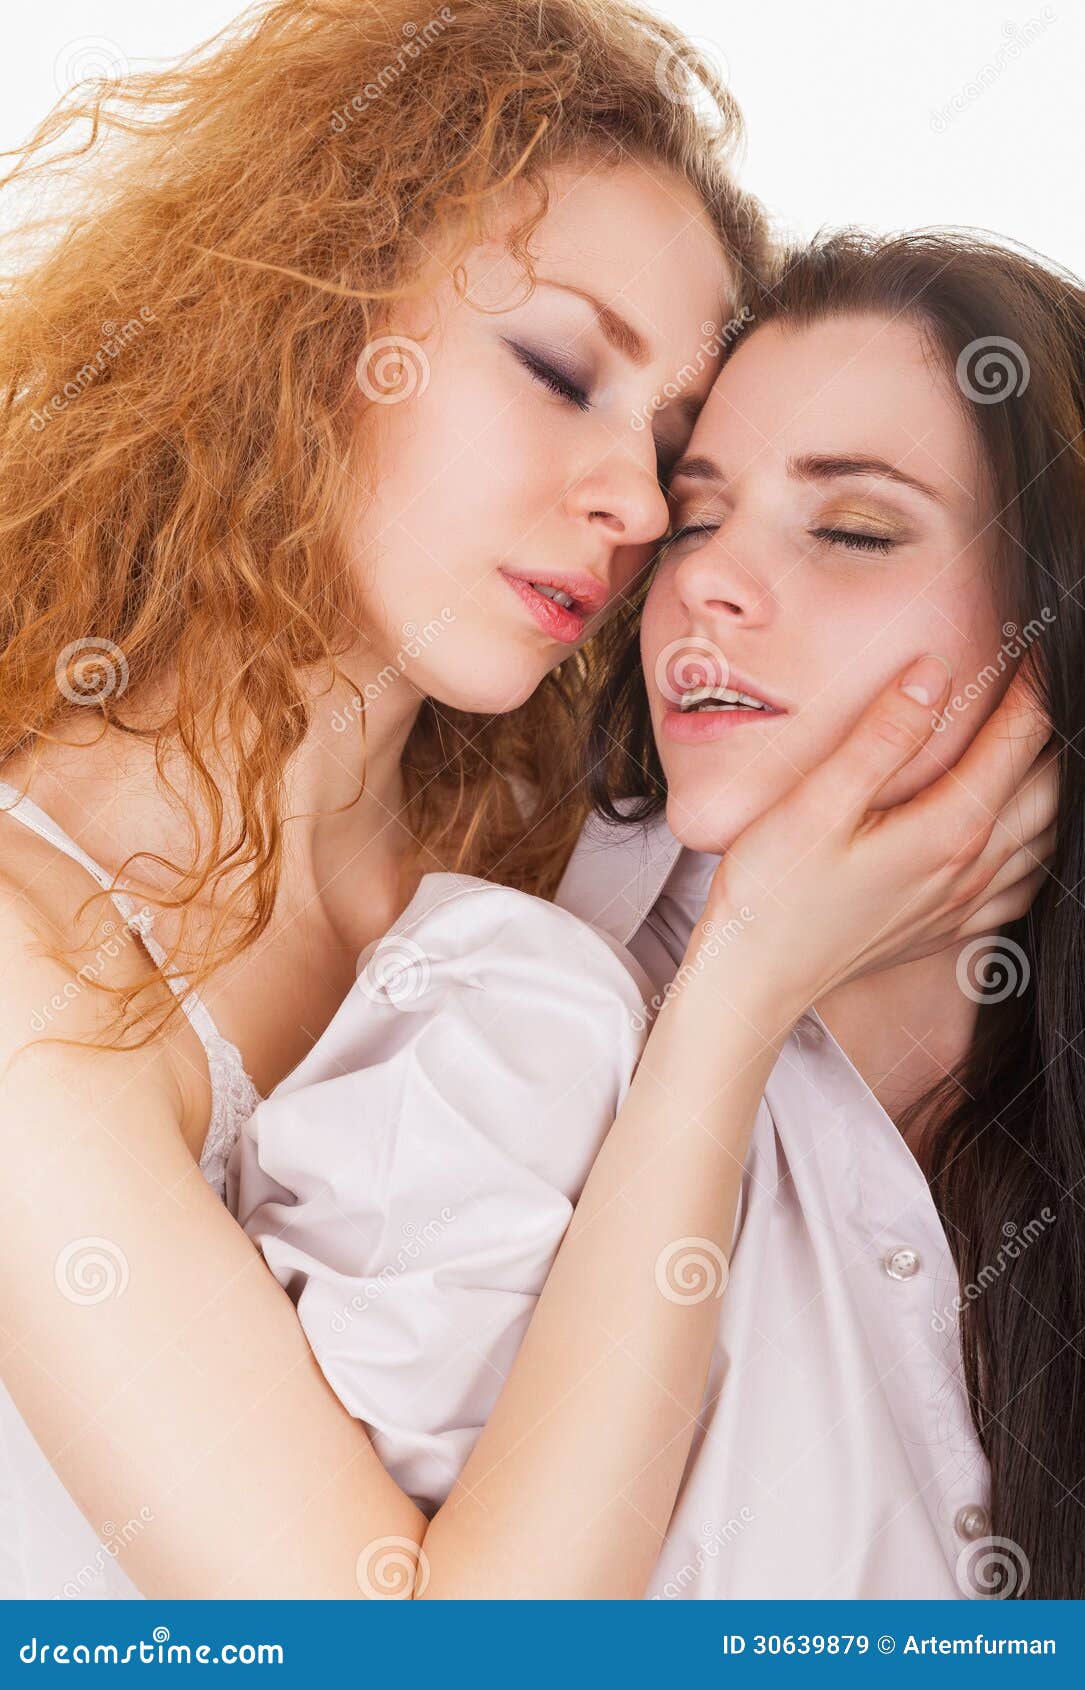 幸福的女同性恋者们在享受欢吻和自拍 库存图片. 图片 包括有 自豪感, 聚会所, 夫妇, 友谊, 同性恋 - 197006161